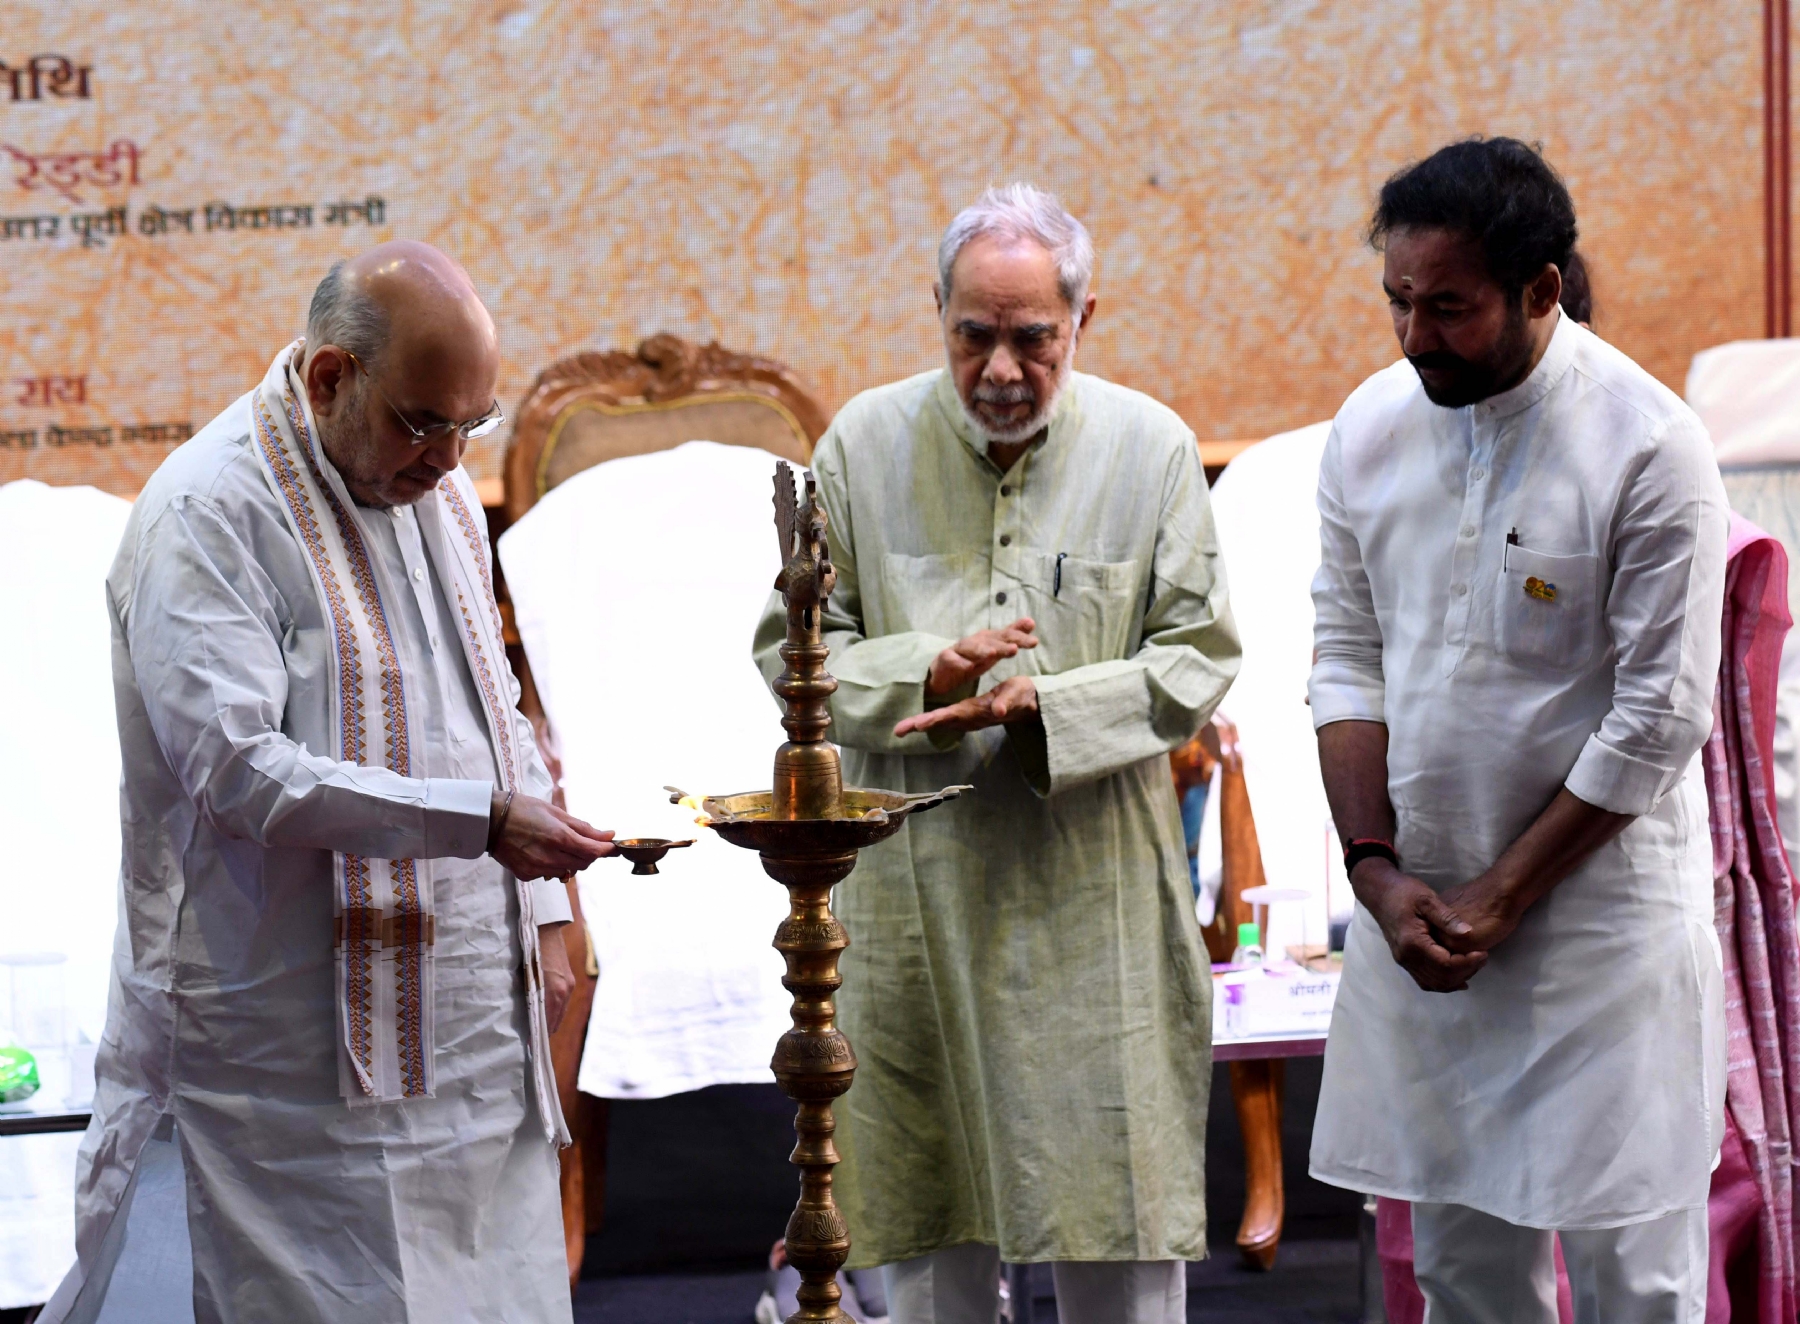 आईजीएनसीए के 36 वें स्थापना दिवस के अवसर पर वैदिक विरासत पोर्टल और कला वैभव (आभासी संग्रहालय) के उद्घाटन के दौरान केंद्रीय गृह मंत्री अमित शाह और संस्कृति मंत्री जी किशन रेड्डी और आईजीएनसीए के अध्यक्ष राम बहादुर राय। 